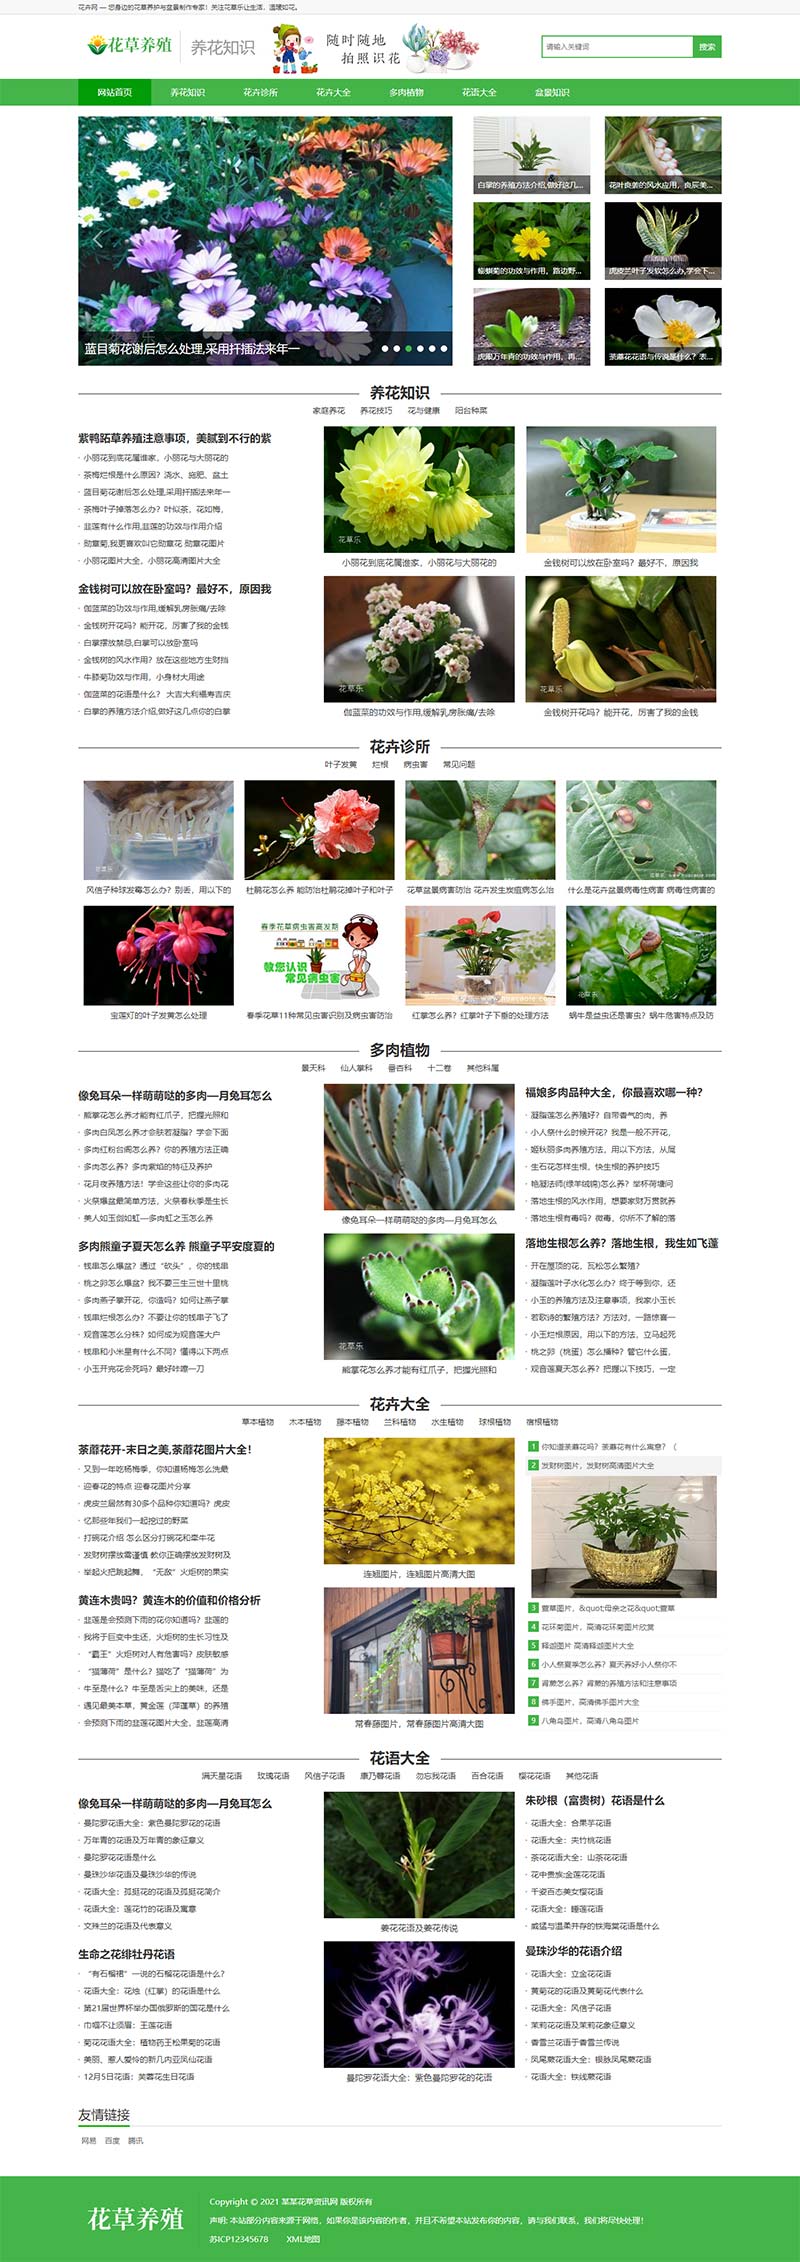 花卉养殖新闻资讯类模板 绿色花草植物网站源码下载